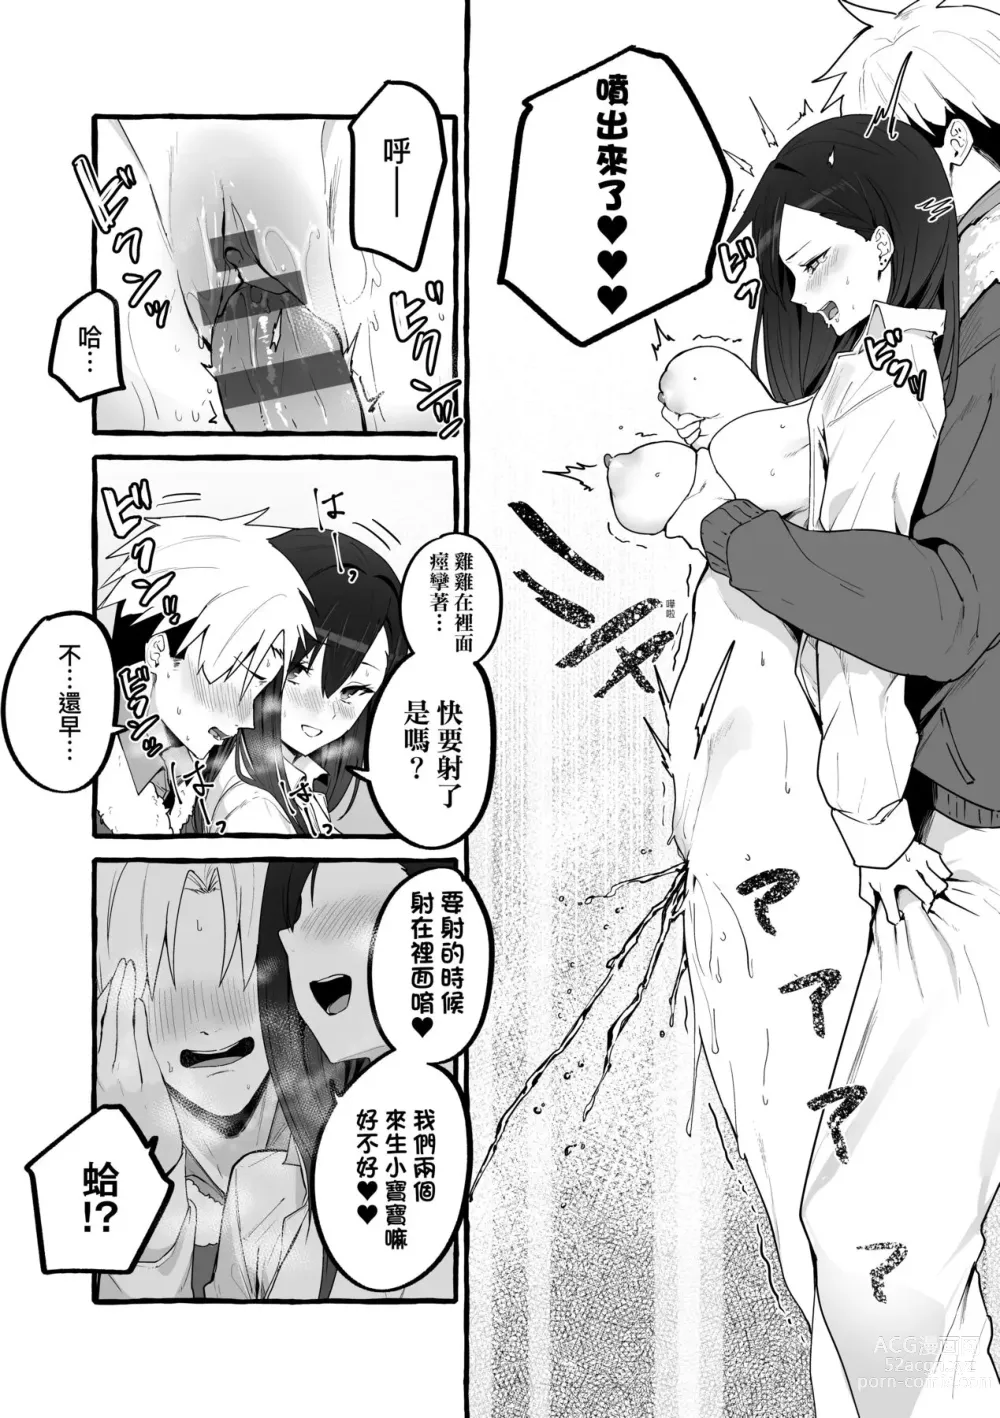 Page 188 of manga #Junai Kanojo